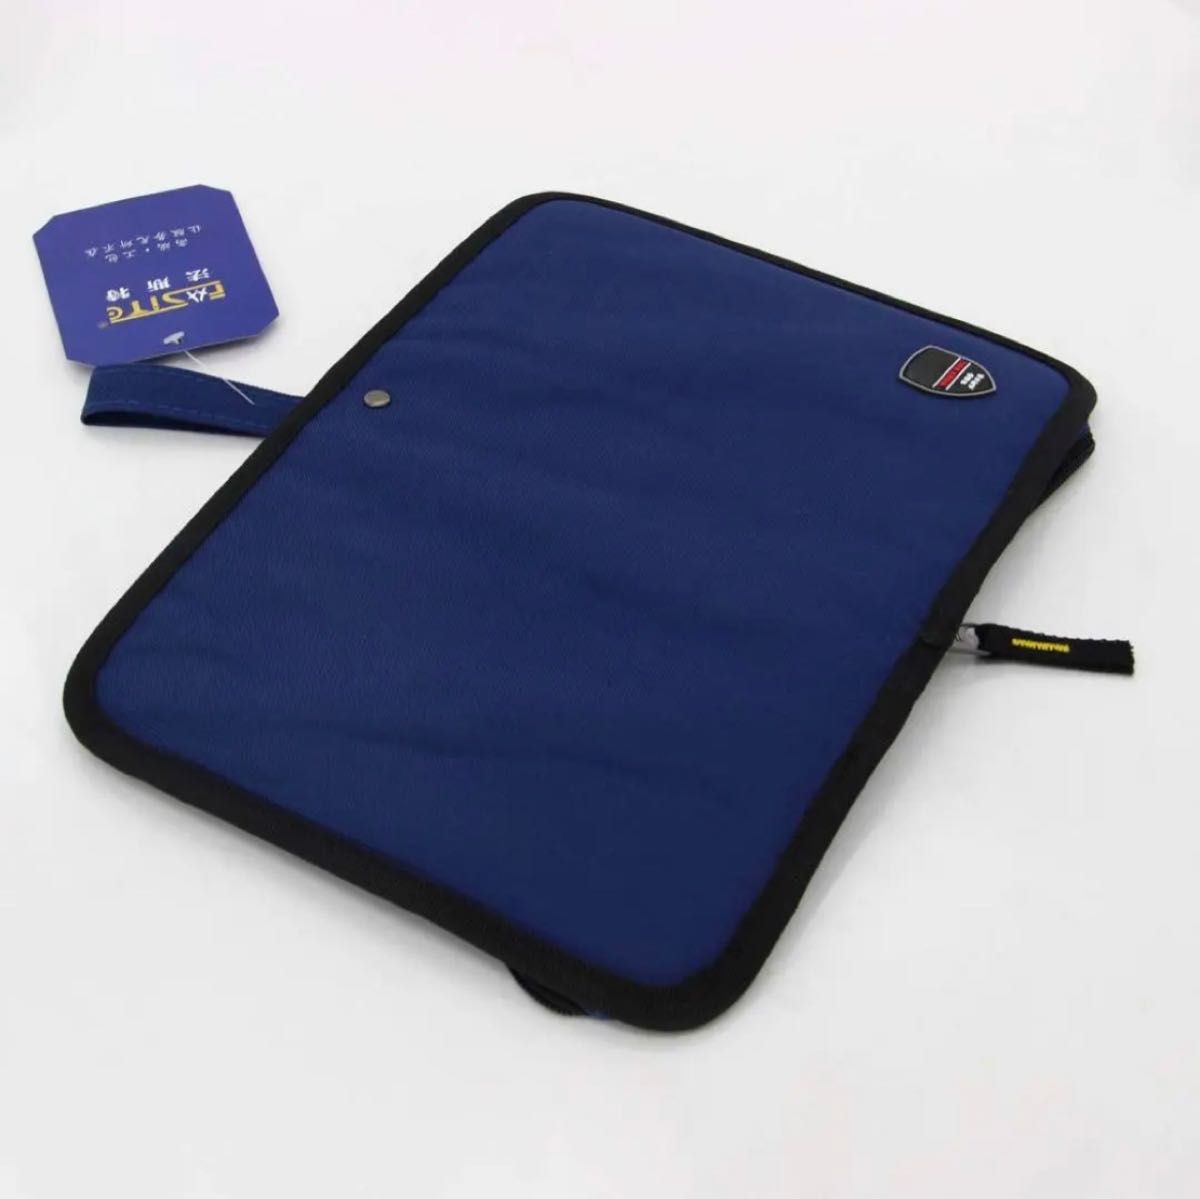 腰袋 作業用 工具入れ 釘 多機能バッグ 大容量 頑丈 電気工事 コンパクト設計 ブルー